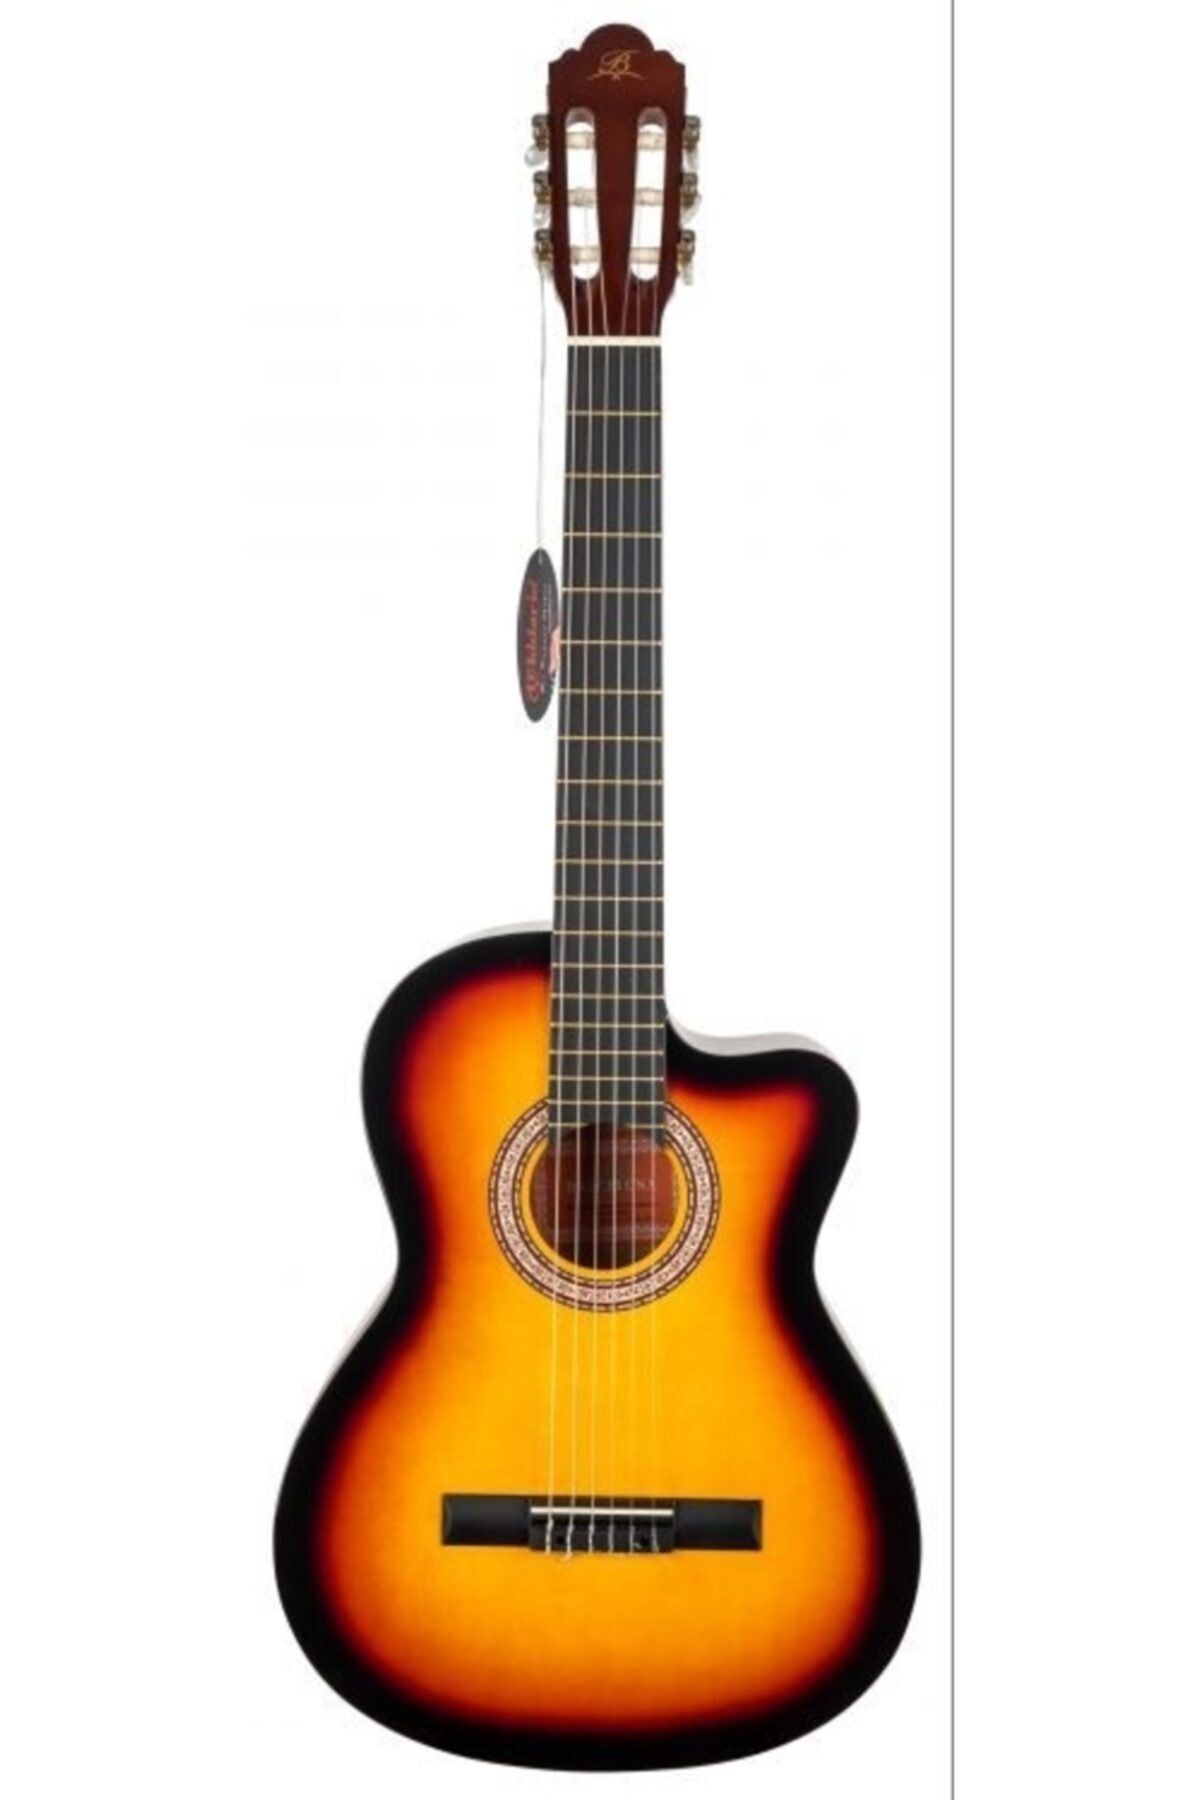 Barcelona Lc 3900 Csb Cutaway Klasik Gitar - Sunburst Renk (yeni Ürün)